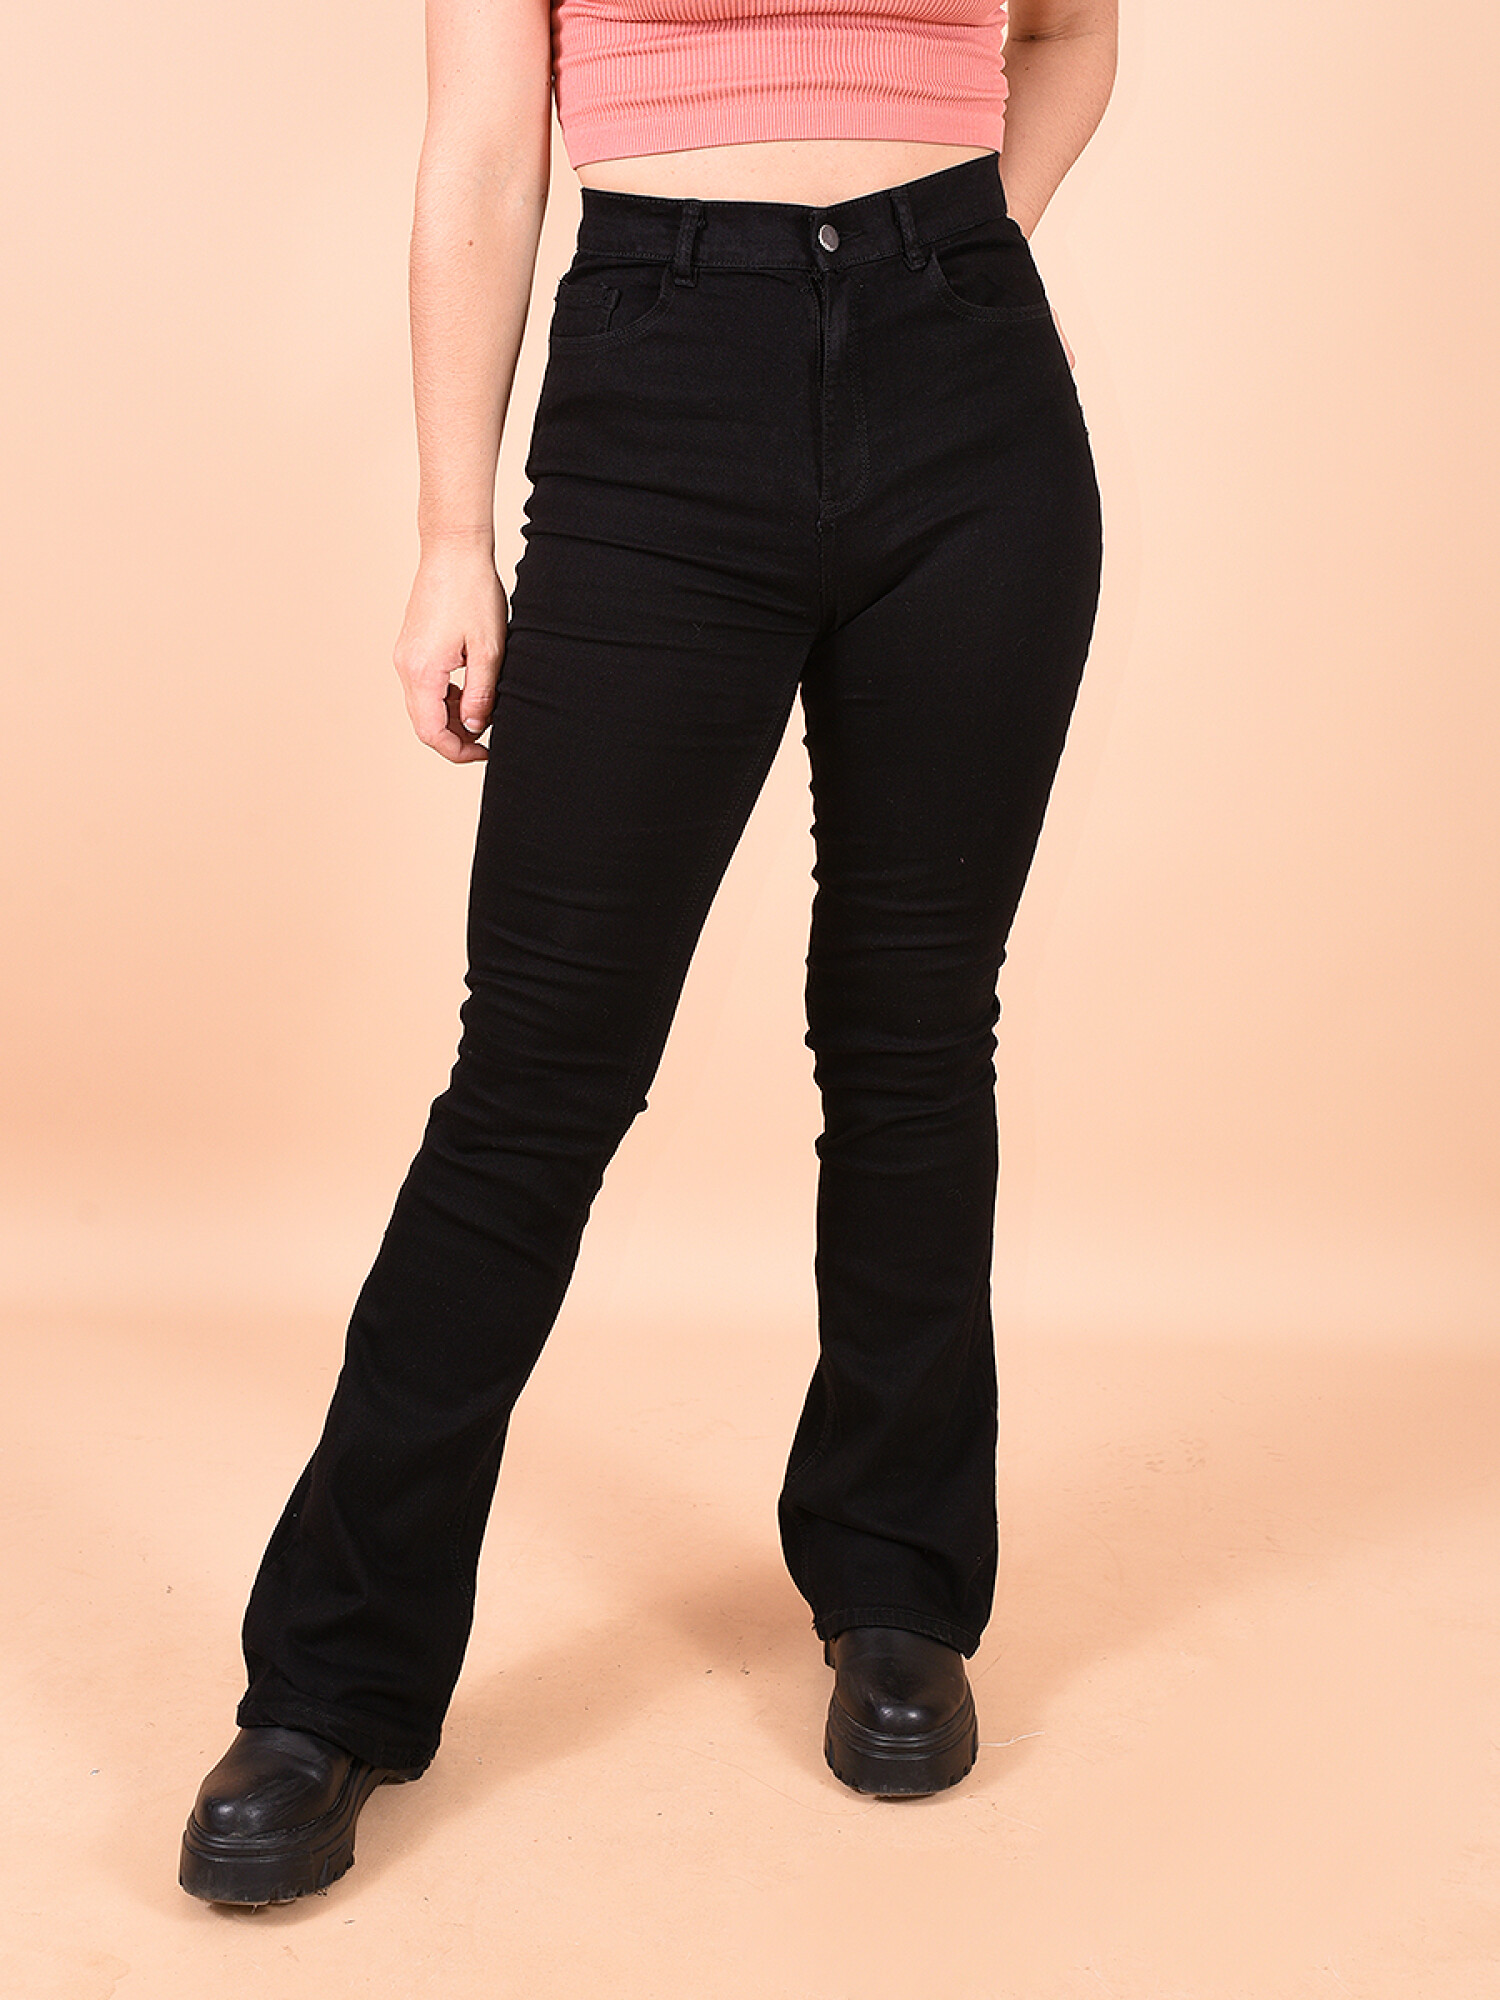 Buy KOZZAK Mens Slim Fit Light Fade Black Denim Jeans at Amazon.in